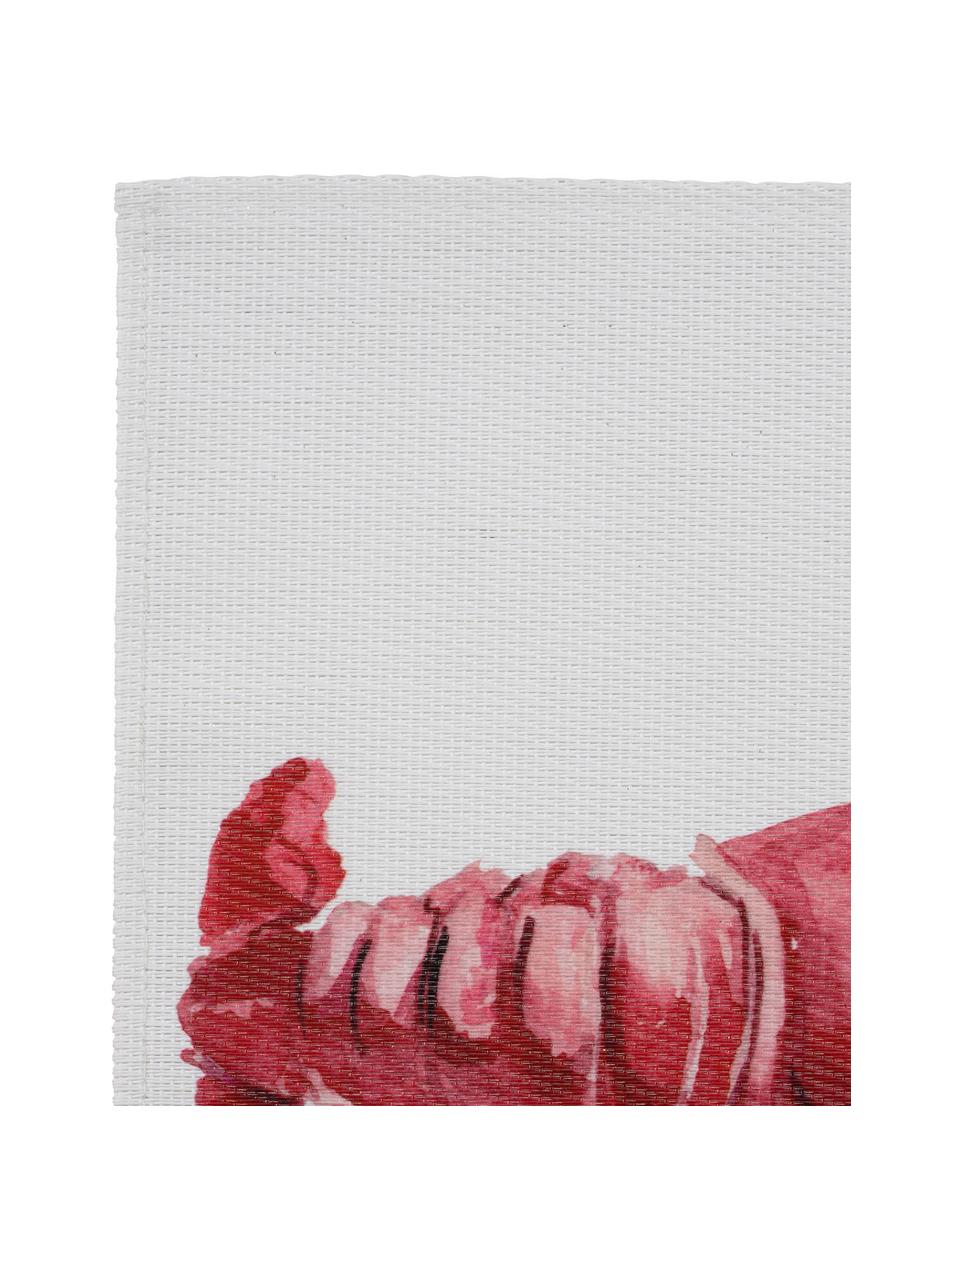 Tischset Ocean mit Hummermotiv, Polyester, Weiss, Rot, 30 x 45 cm